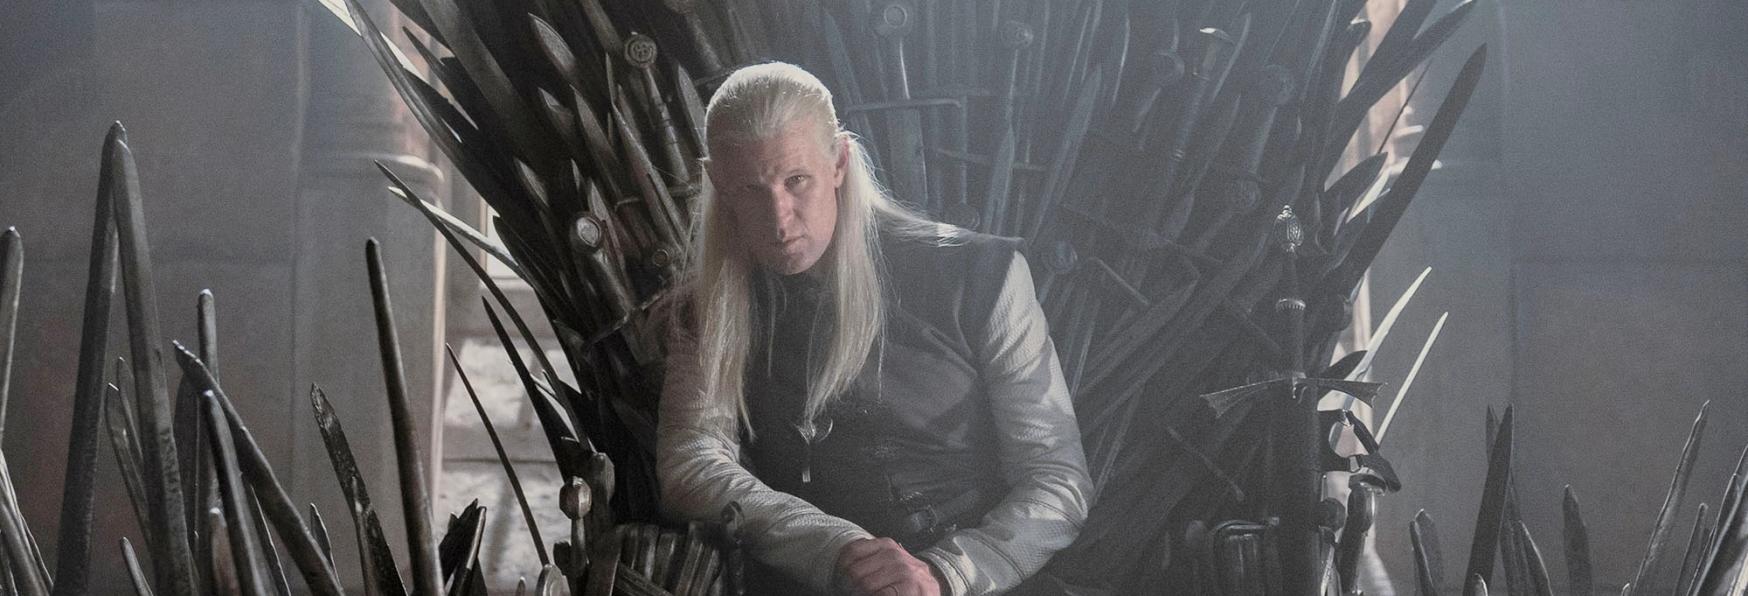 House of the Dragon: HBO è pronta a Rinnovare la Serie TV? Ecco le Ultime Notizie